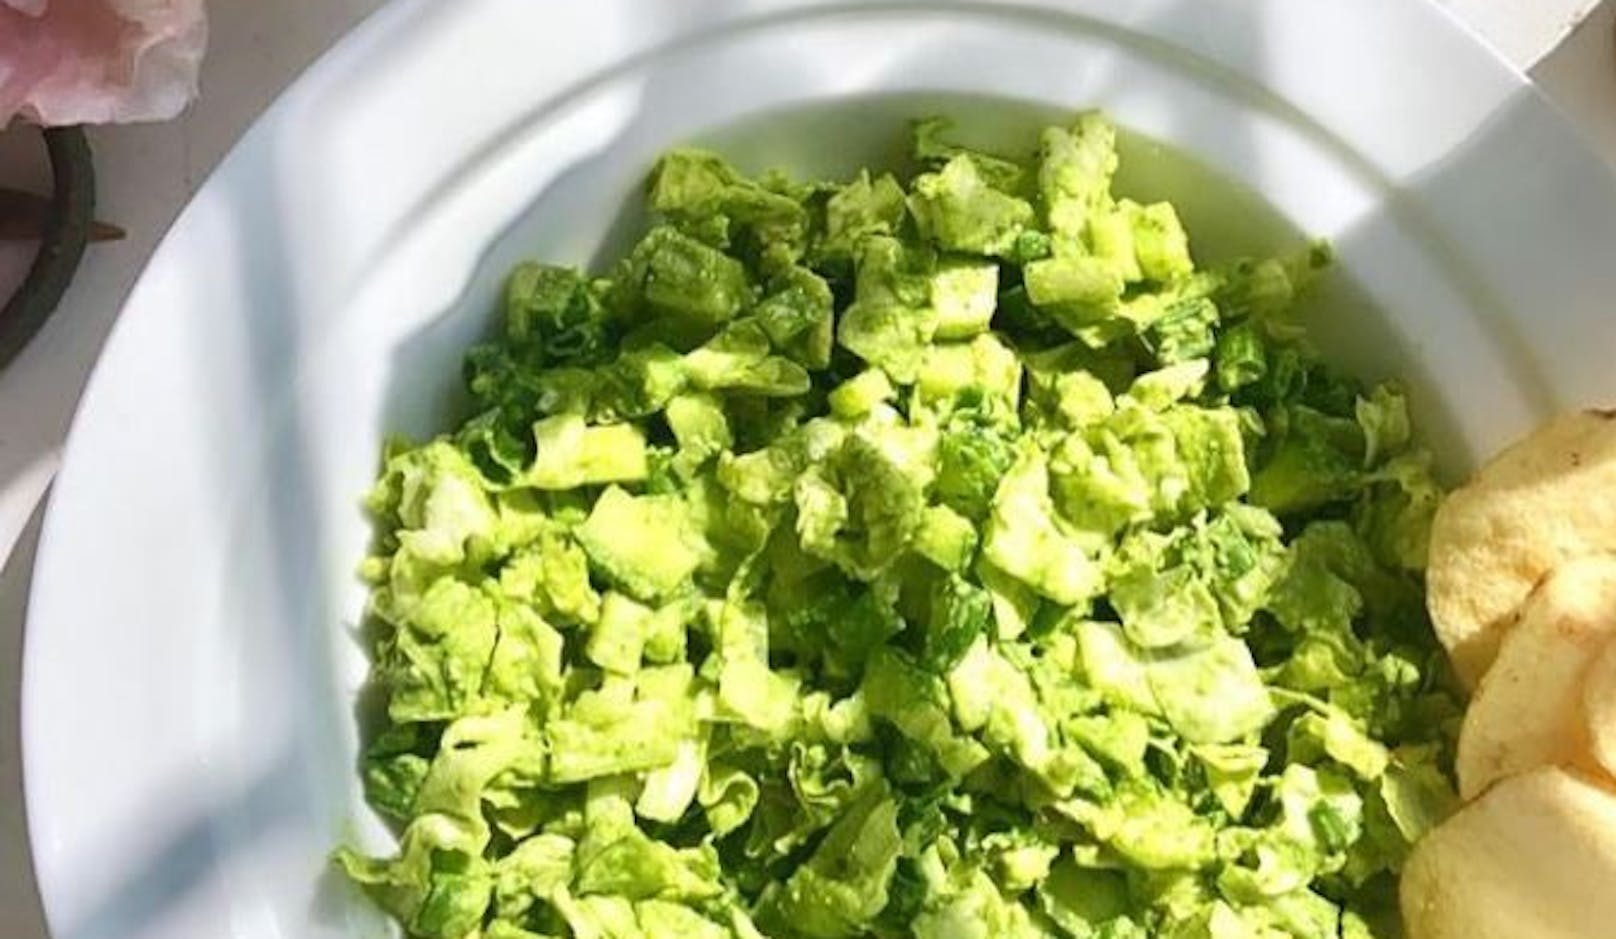 Mit dem Trend "Vegenuary" erlangte der Green-Goddess-Salat mehr Beliebtheit und feiert nun seinen Comeback.